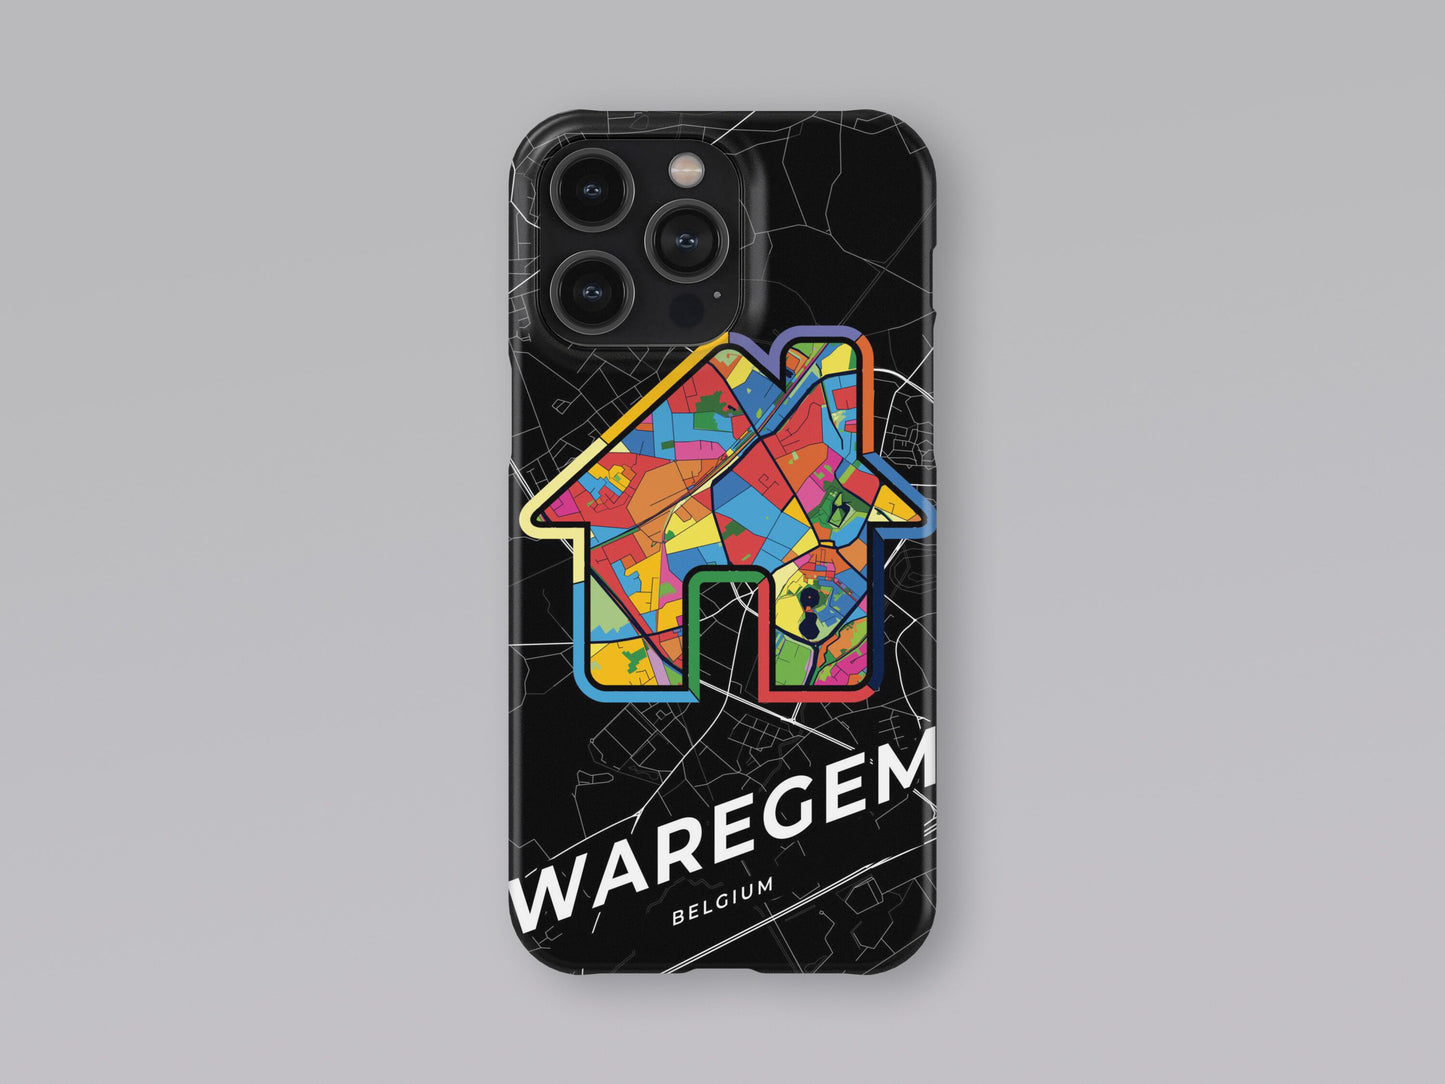 Waregem Belgium slim phone case with colorful icon 3